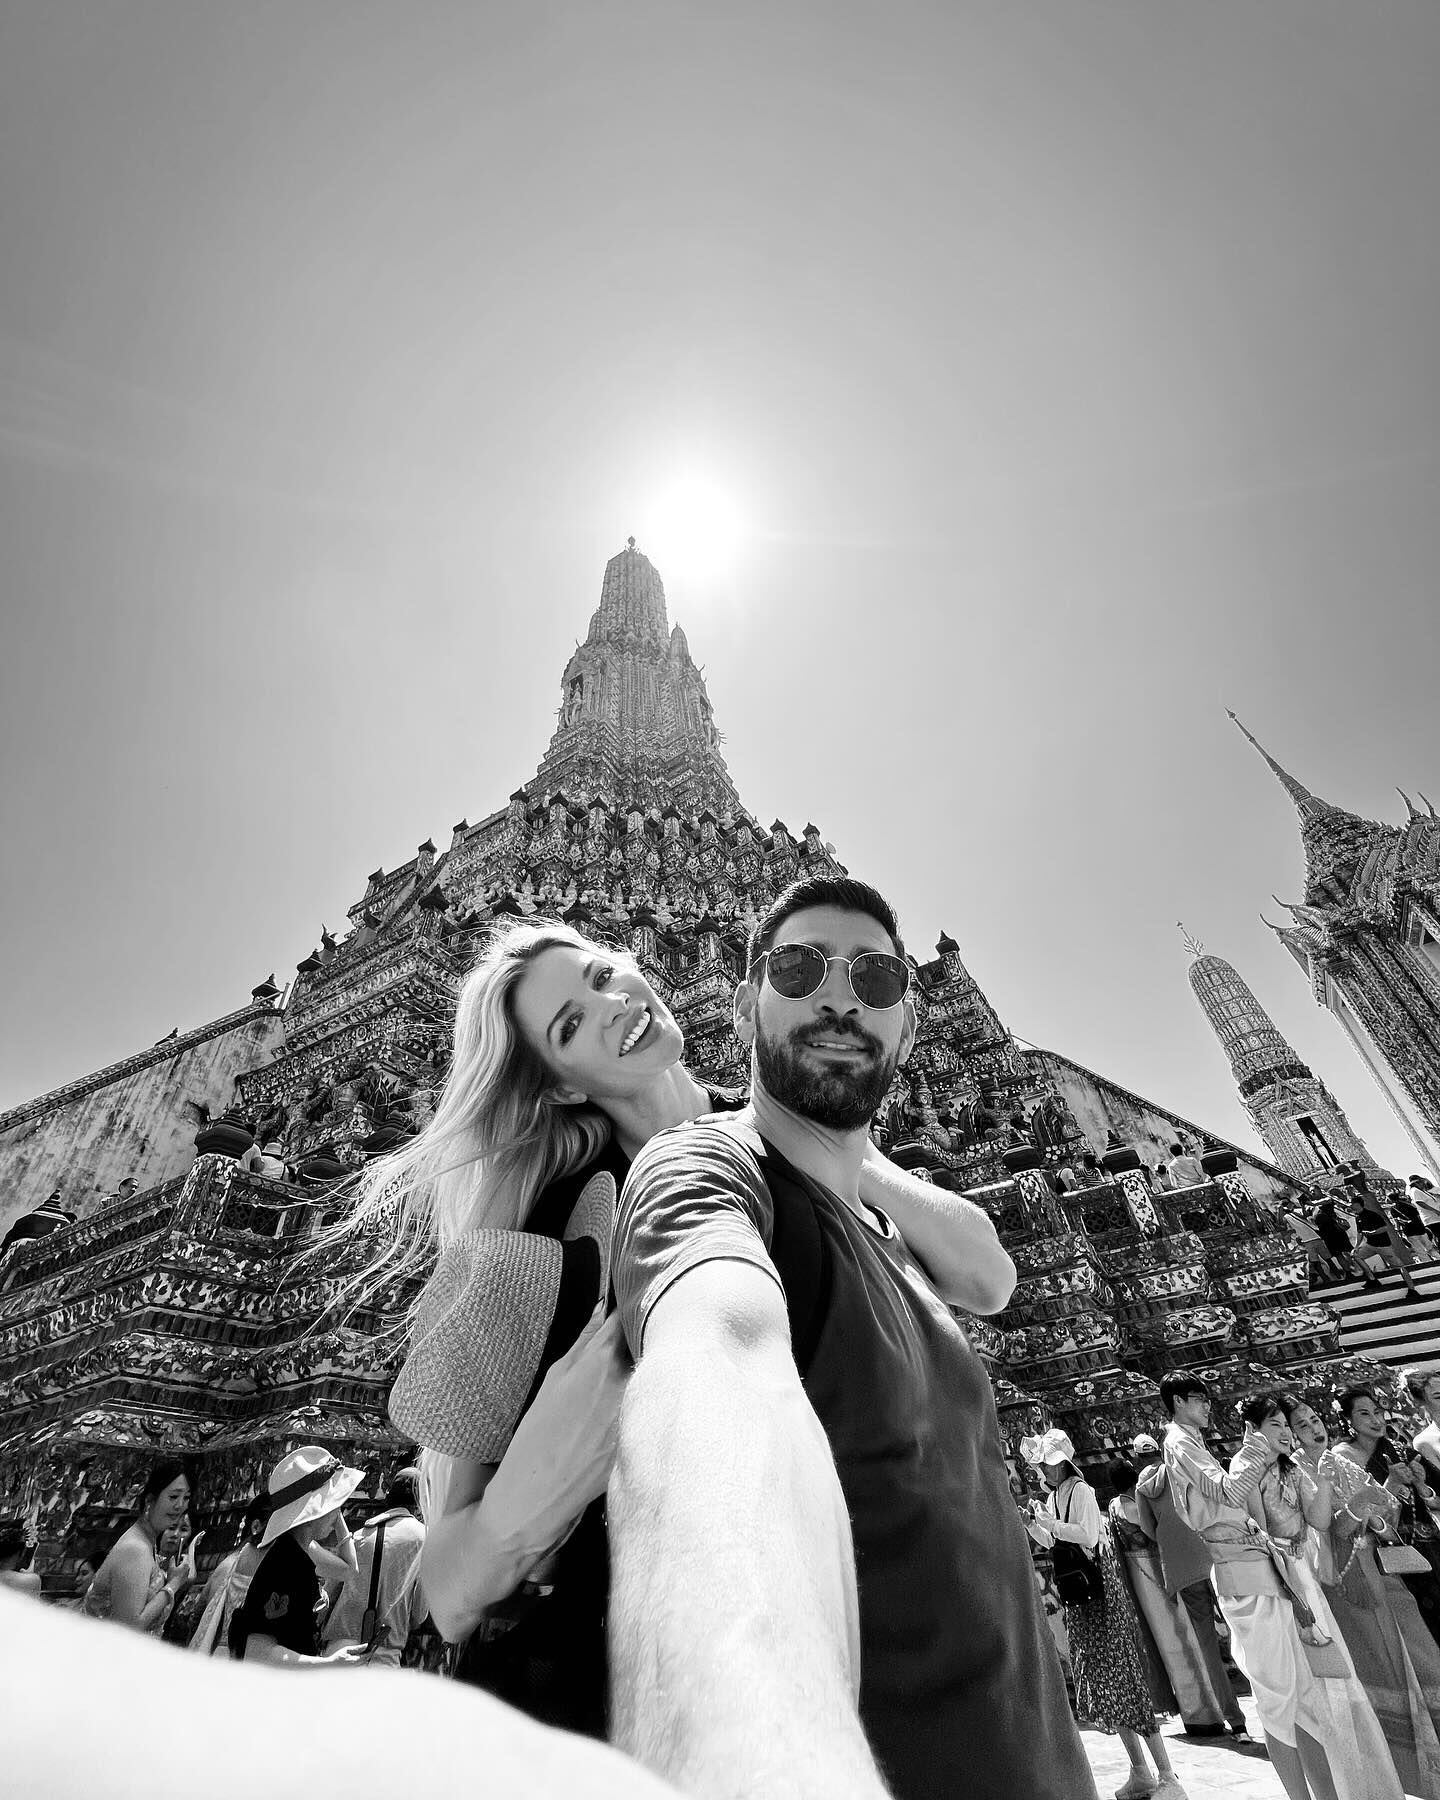 Durante su luna de miel Leonora Jiménez y Mariano Herrera han visitado lugares históricos y turísticos de Tailandia.